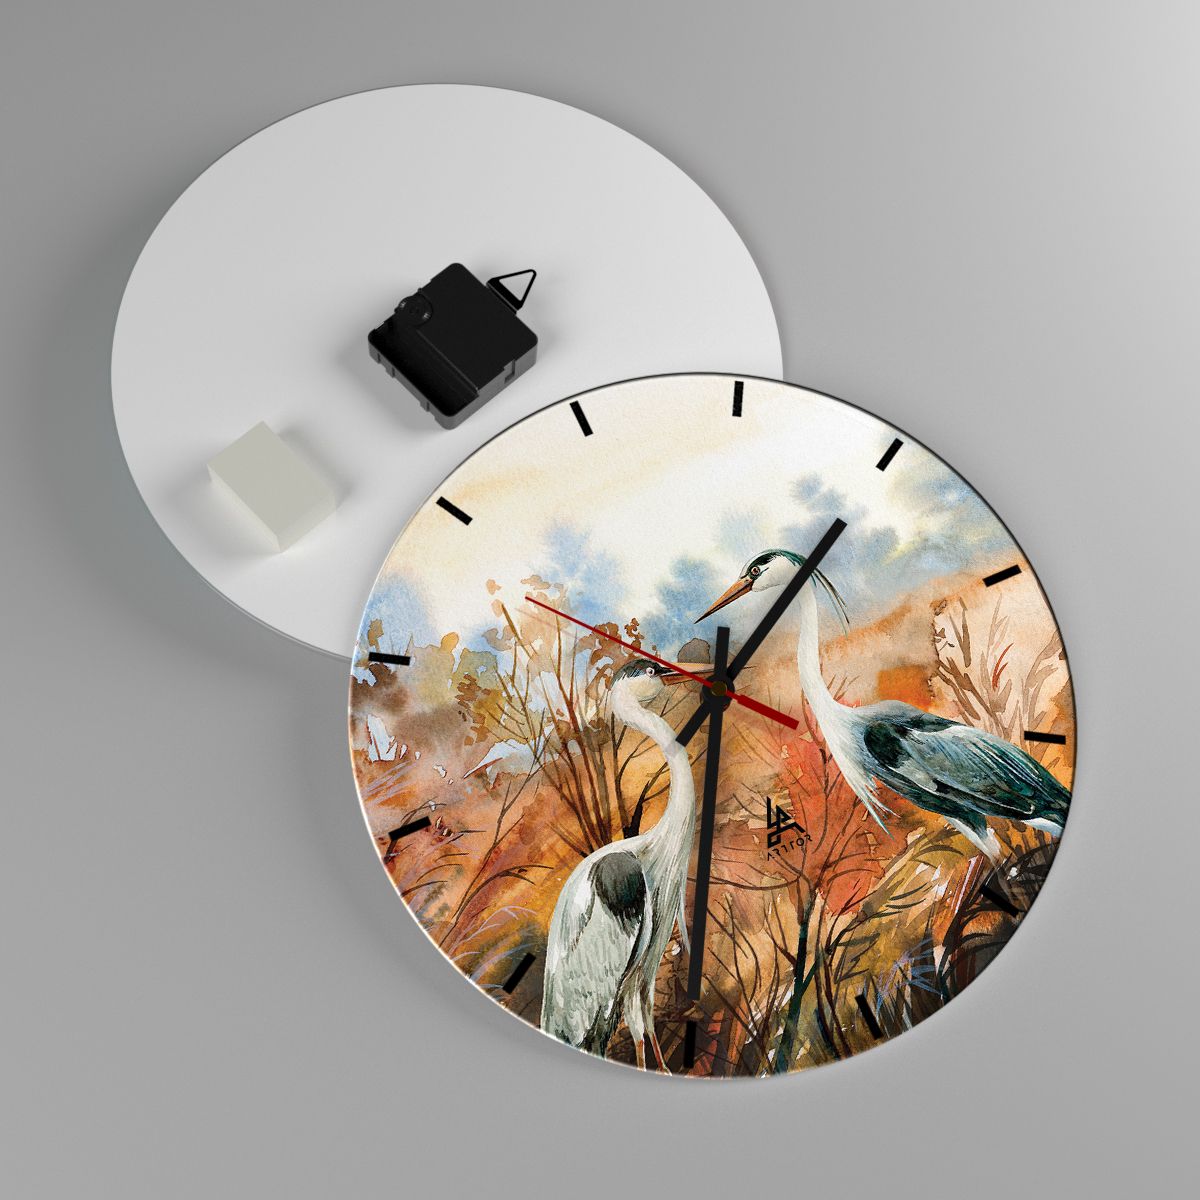 Horloge murale Grue, Horloge murale Les Oiseaux, Horloge murale La Nature, Horloge murale Art, Horloge murale Asie